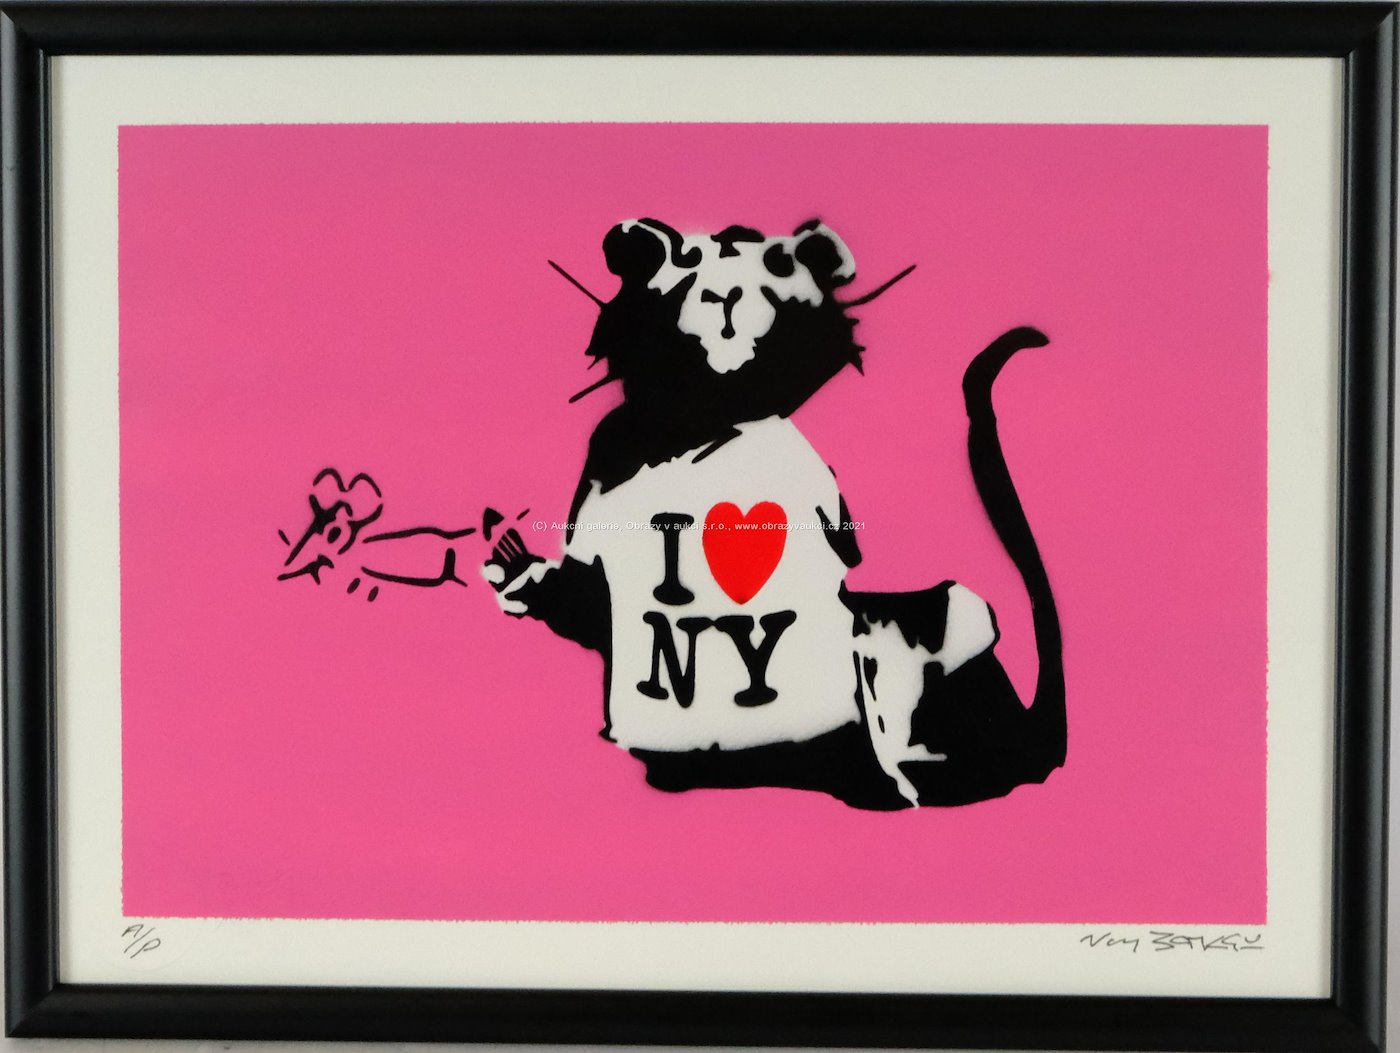 Not Banksy - I love N.Y. 